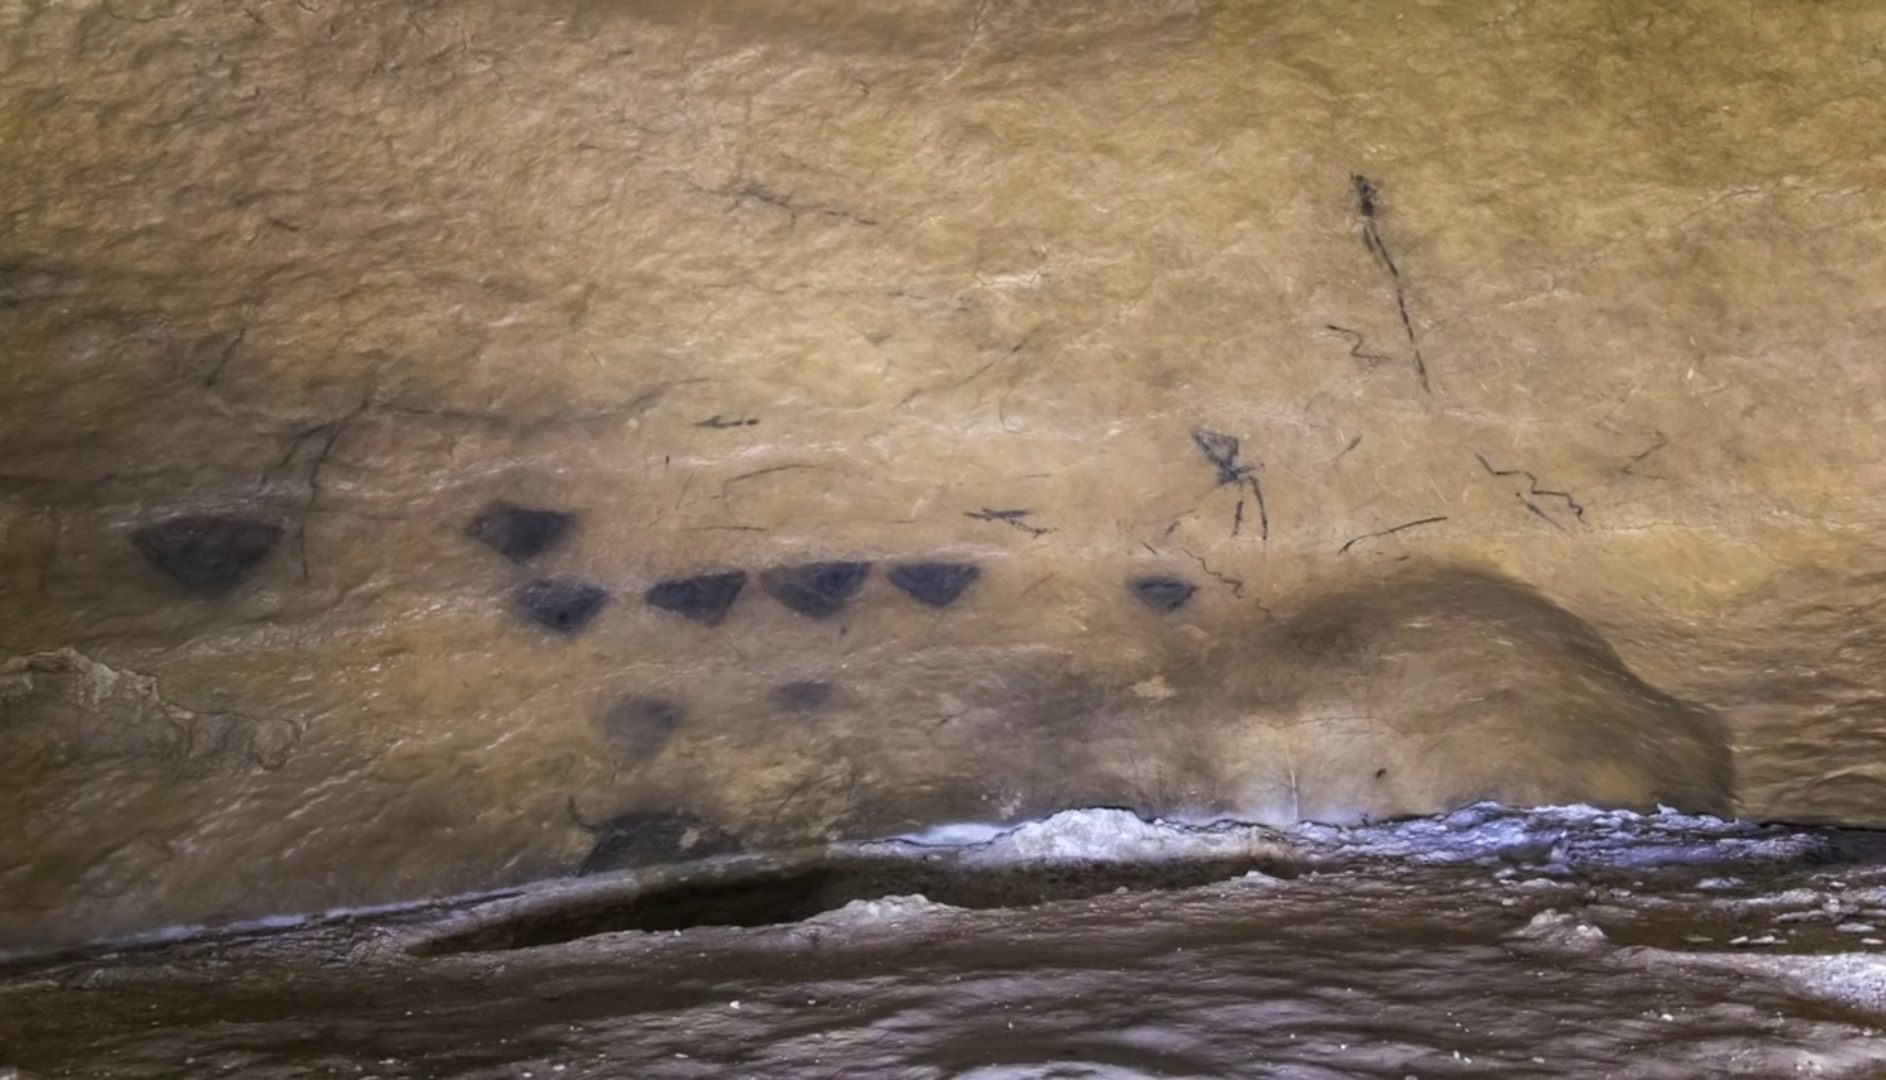 Një grup shenjash gjeometrike të përdorura në mbarë botën 40,000 vjet më parë – zbuluan shkencëtarët 1